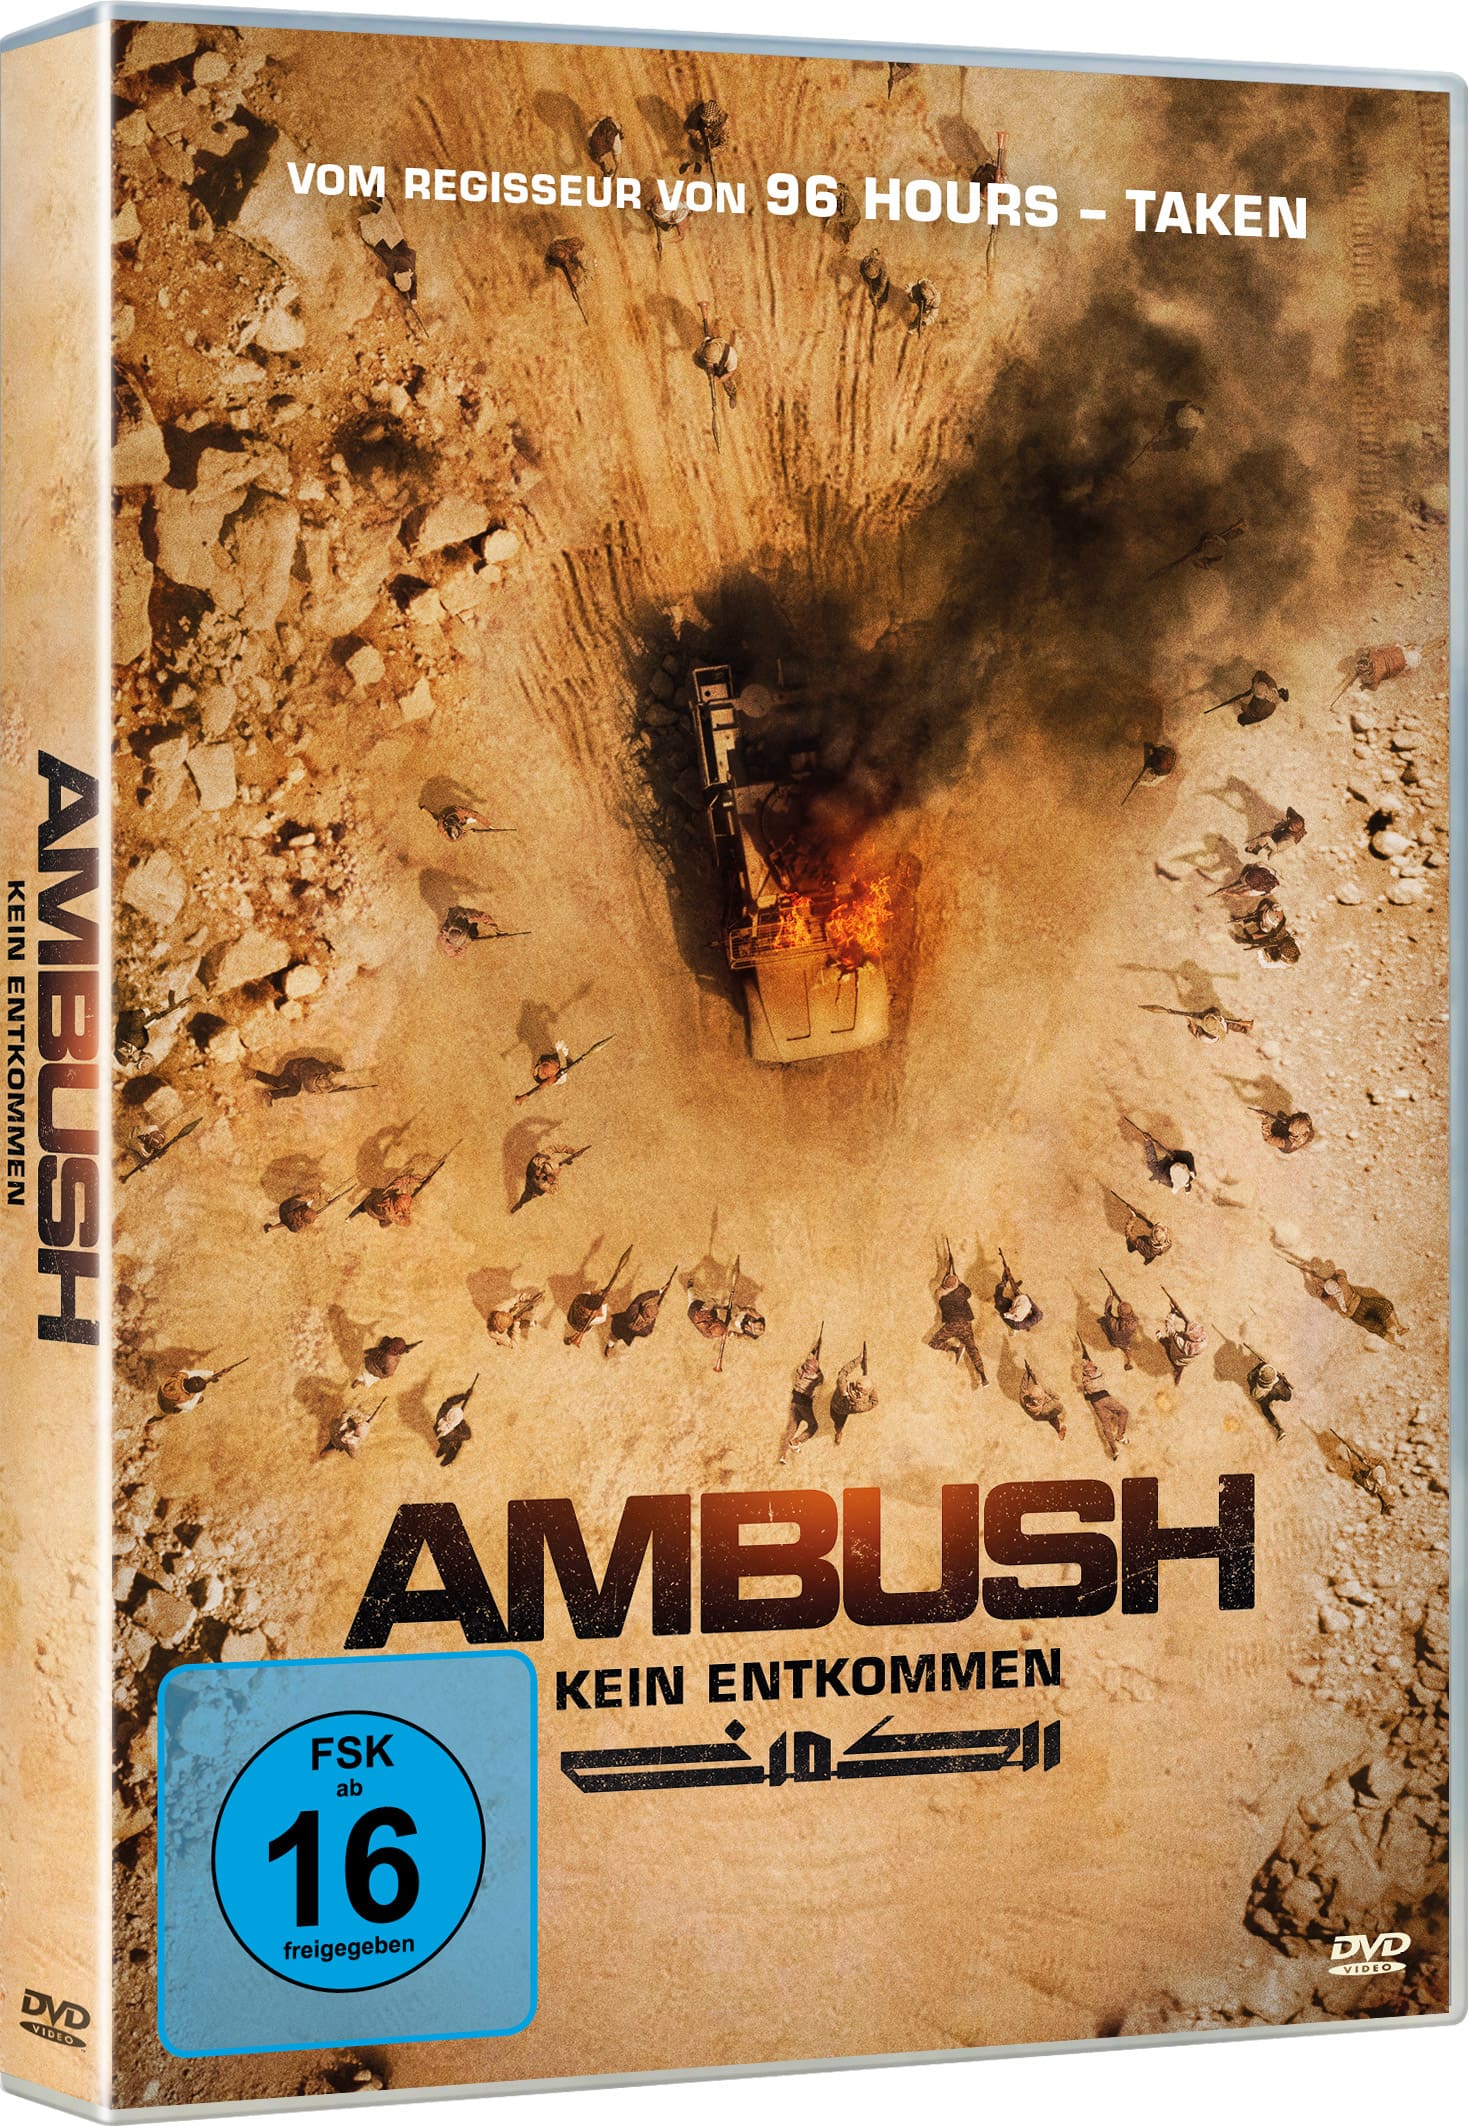 Ambush - Kein Entkommen (DVD) Image 2